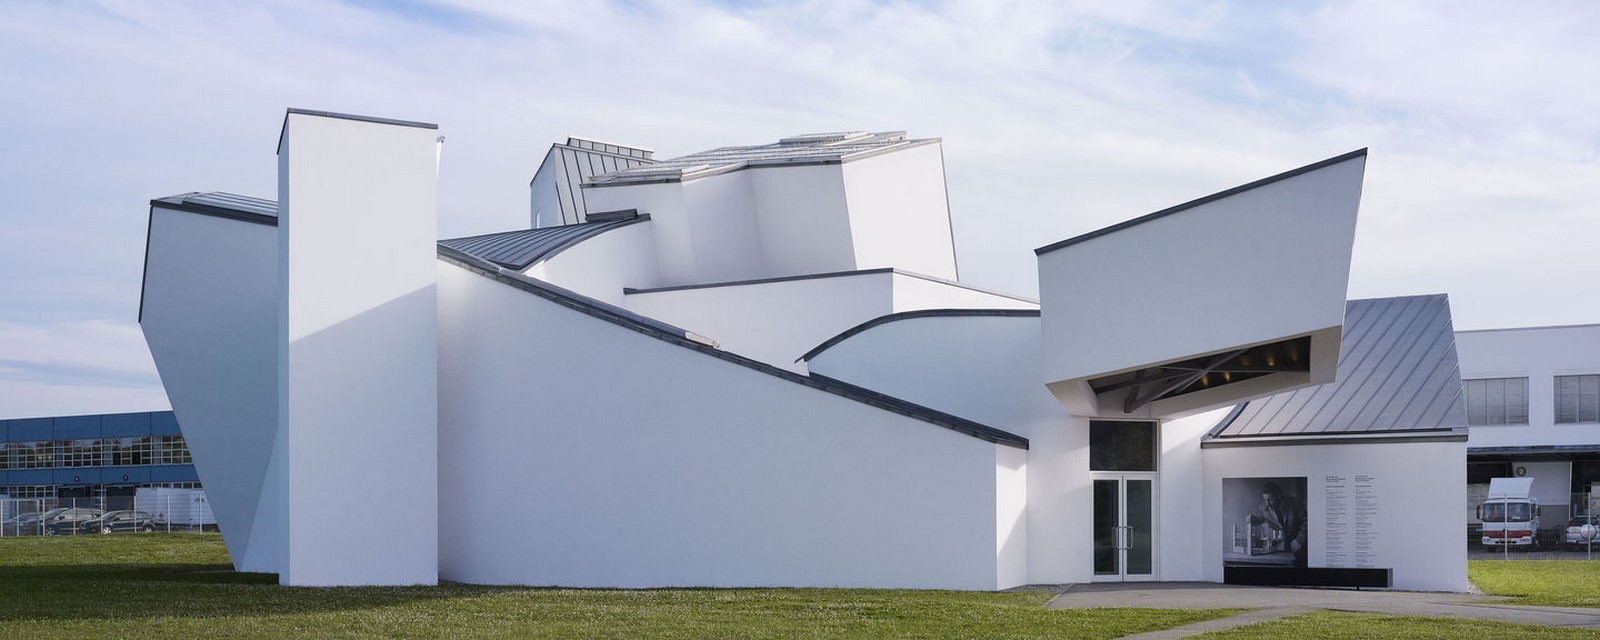 Vitra Design Museum (Weil am Rhein, Germany) - Sheet1